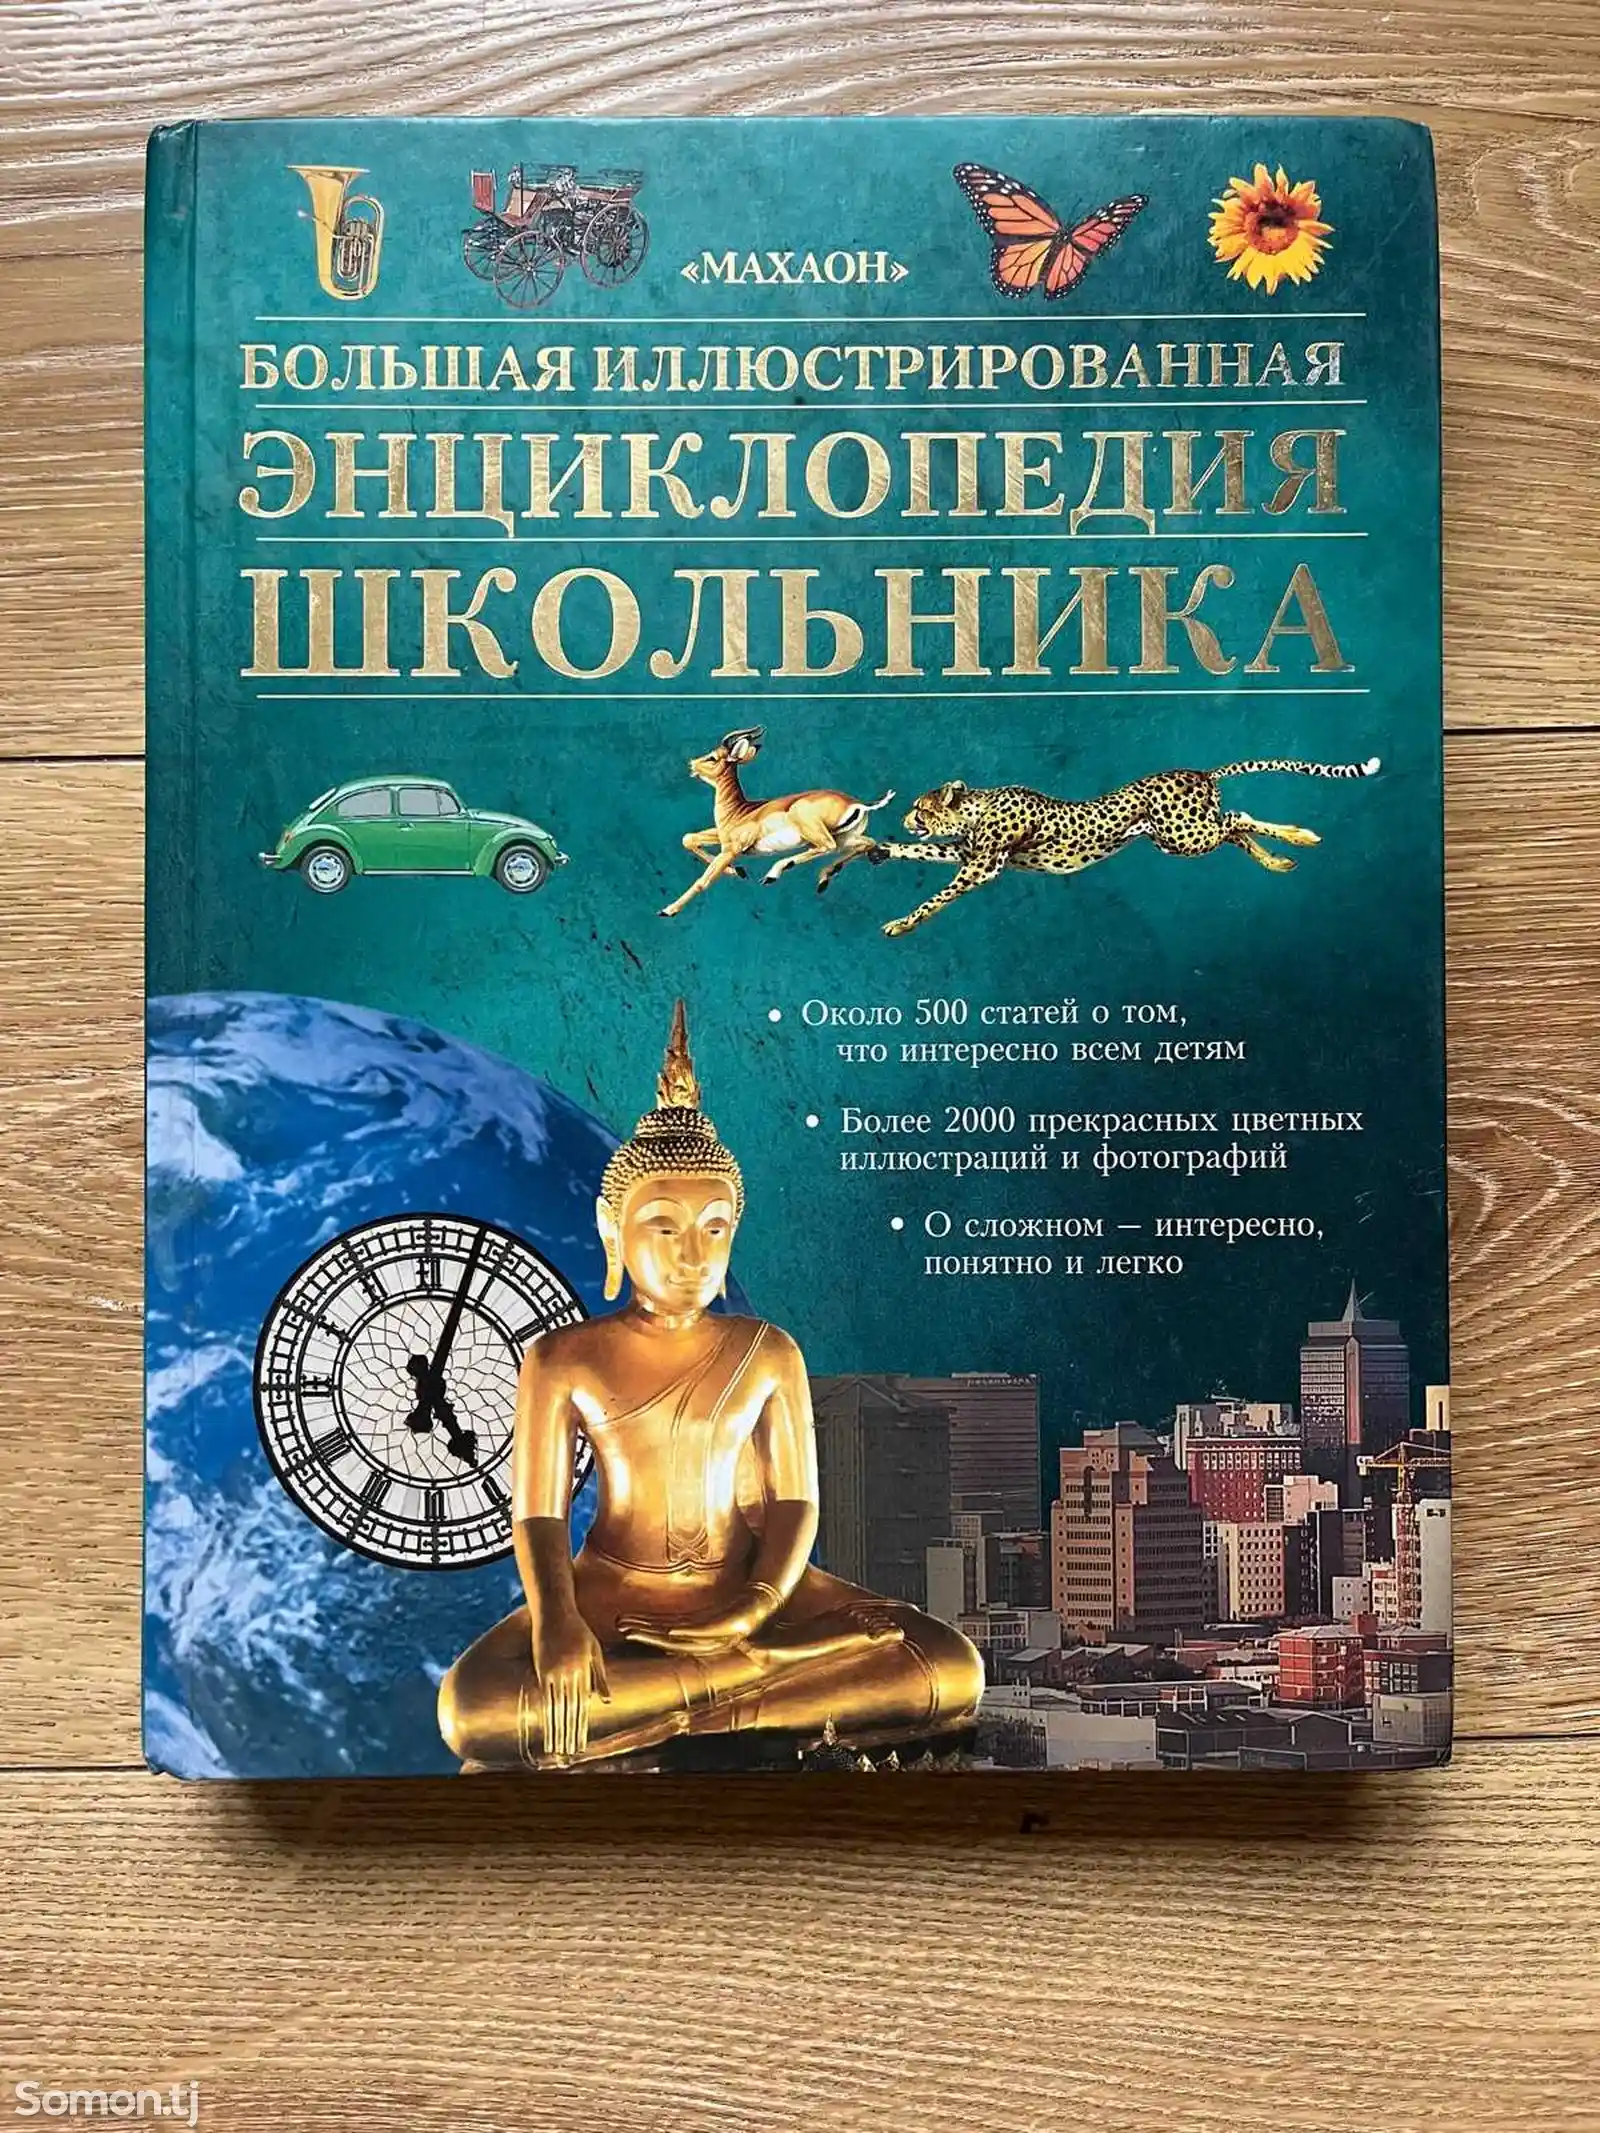 Большая иллюстрированная Энциклопедия школьника